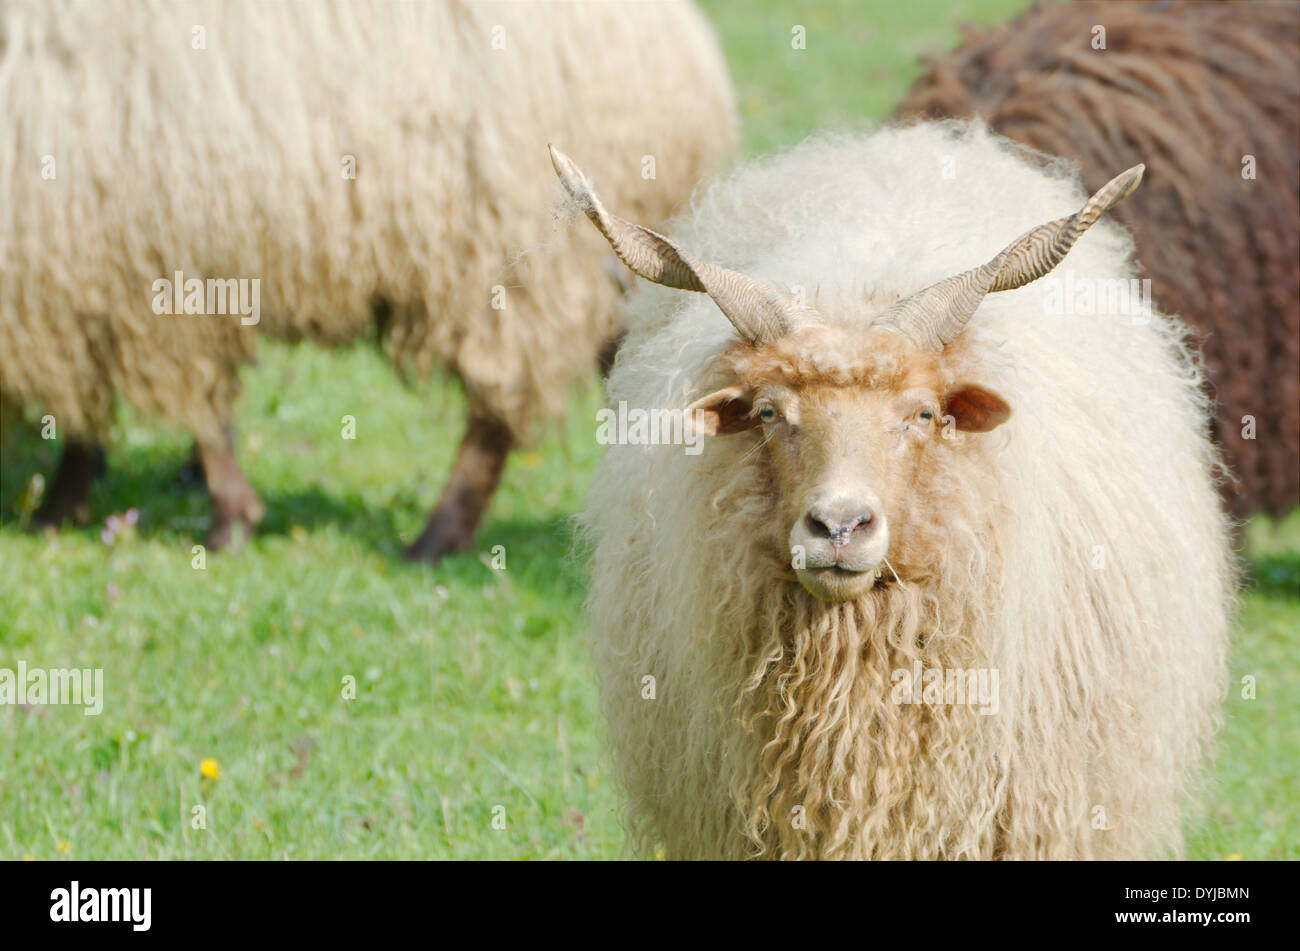 Hungarian Racka Sheep Gazing in a Green Field Stock Photo